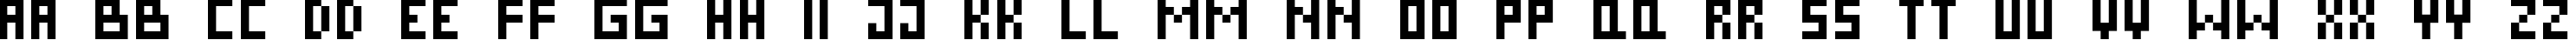 Пример написания английского алфавита шрифтом Pixel Cyr Normal